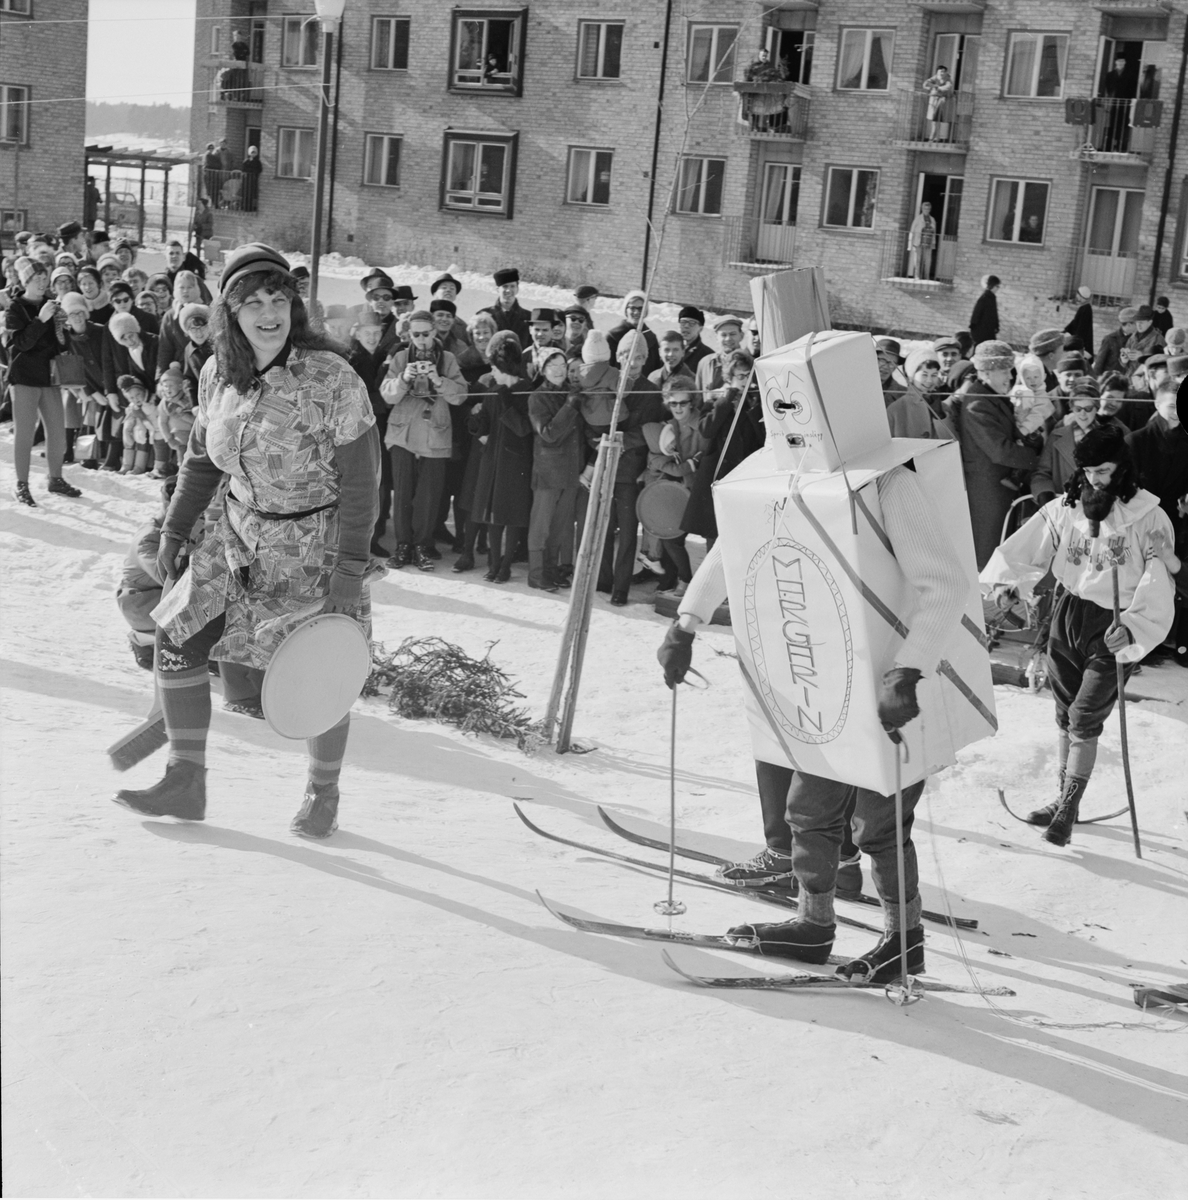 Studentliv - skidtävlingen Birkarlarenneth, Uppsala 1962